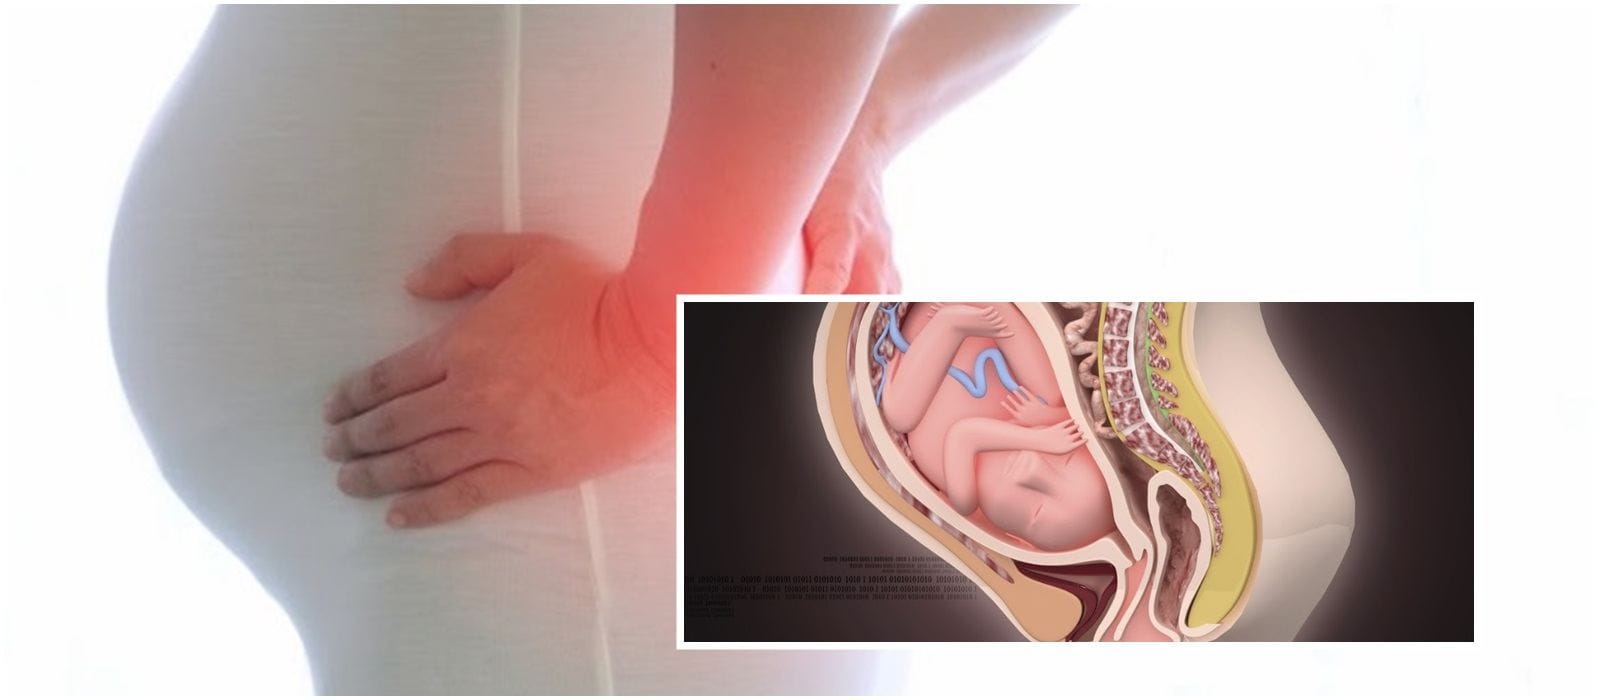 Tại sao đau nhức xương khớp trong thai kỳ thường xuất hiện ở giai đoạn nào?
